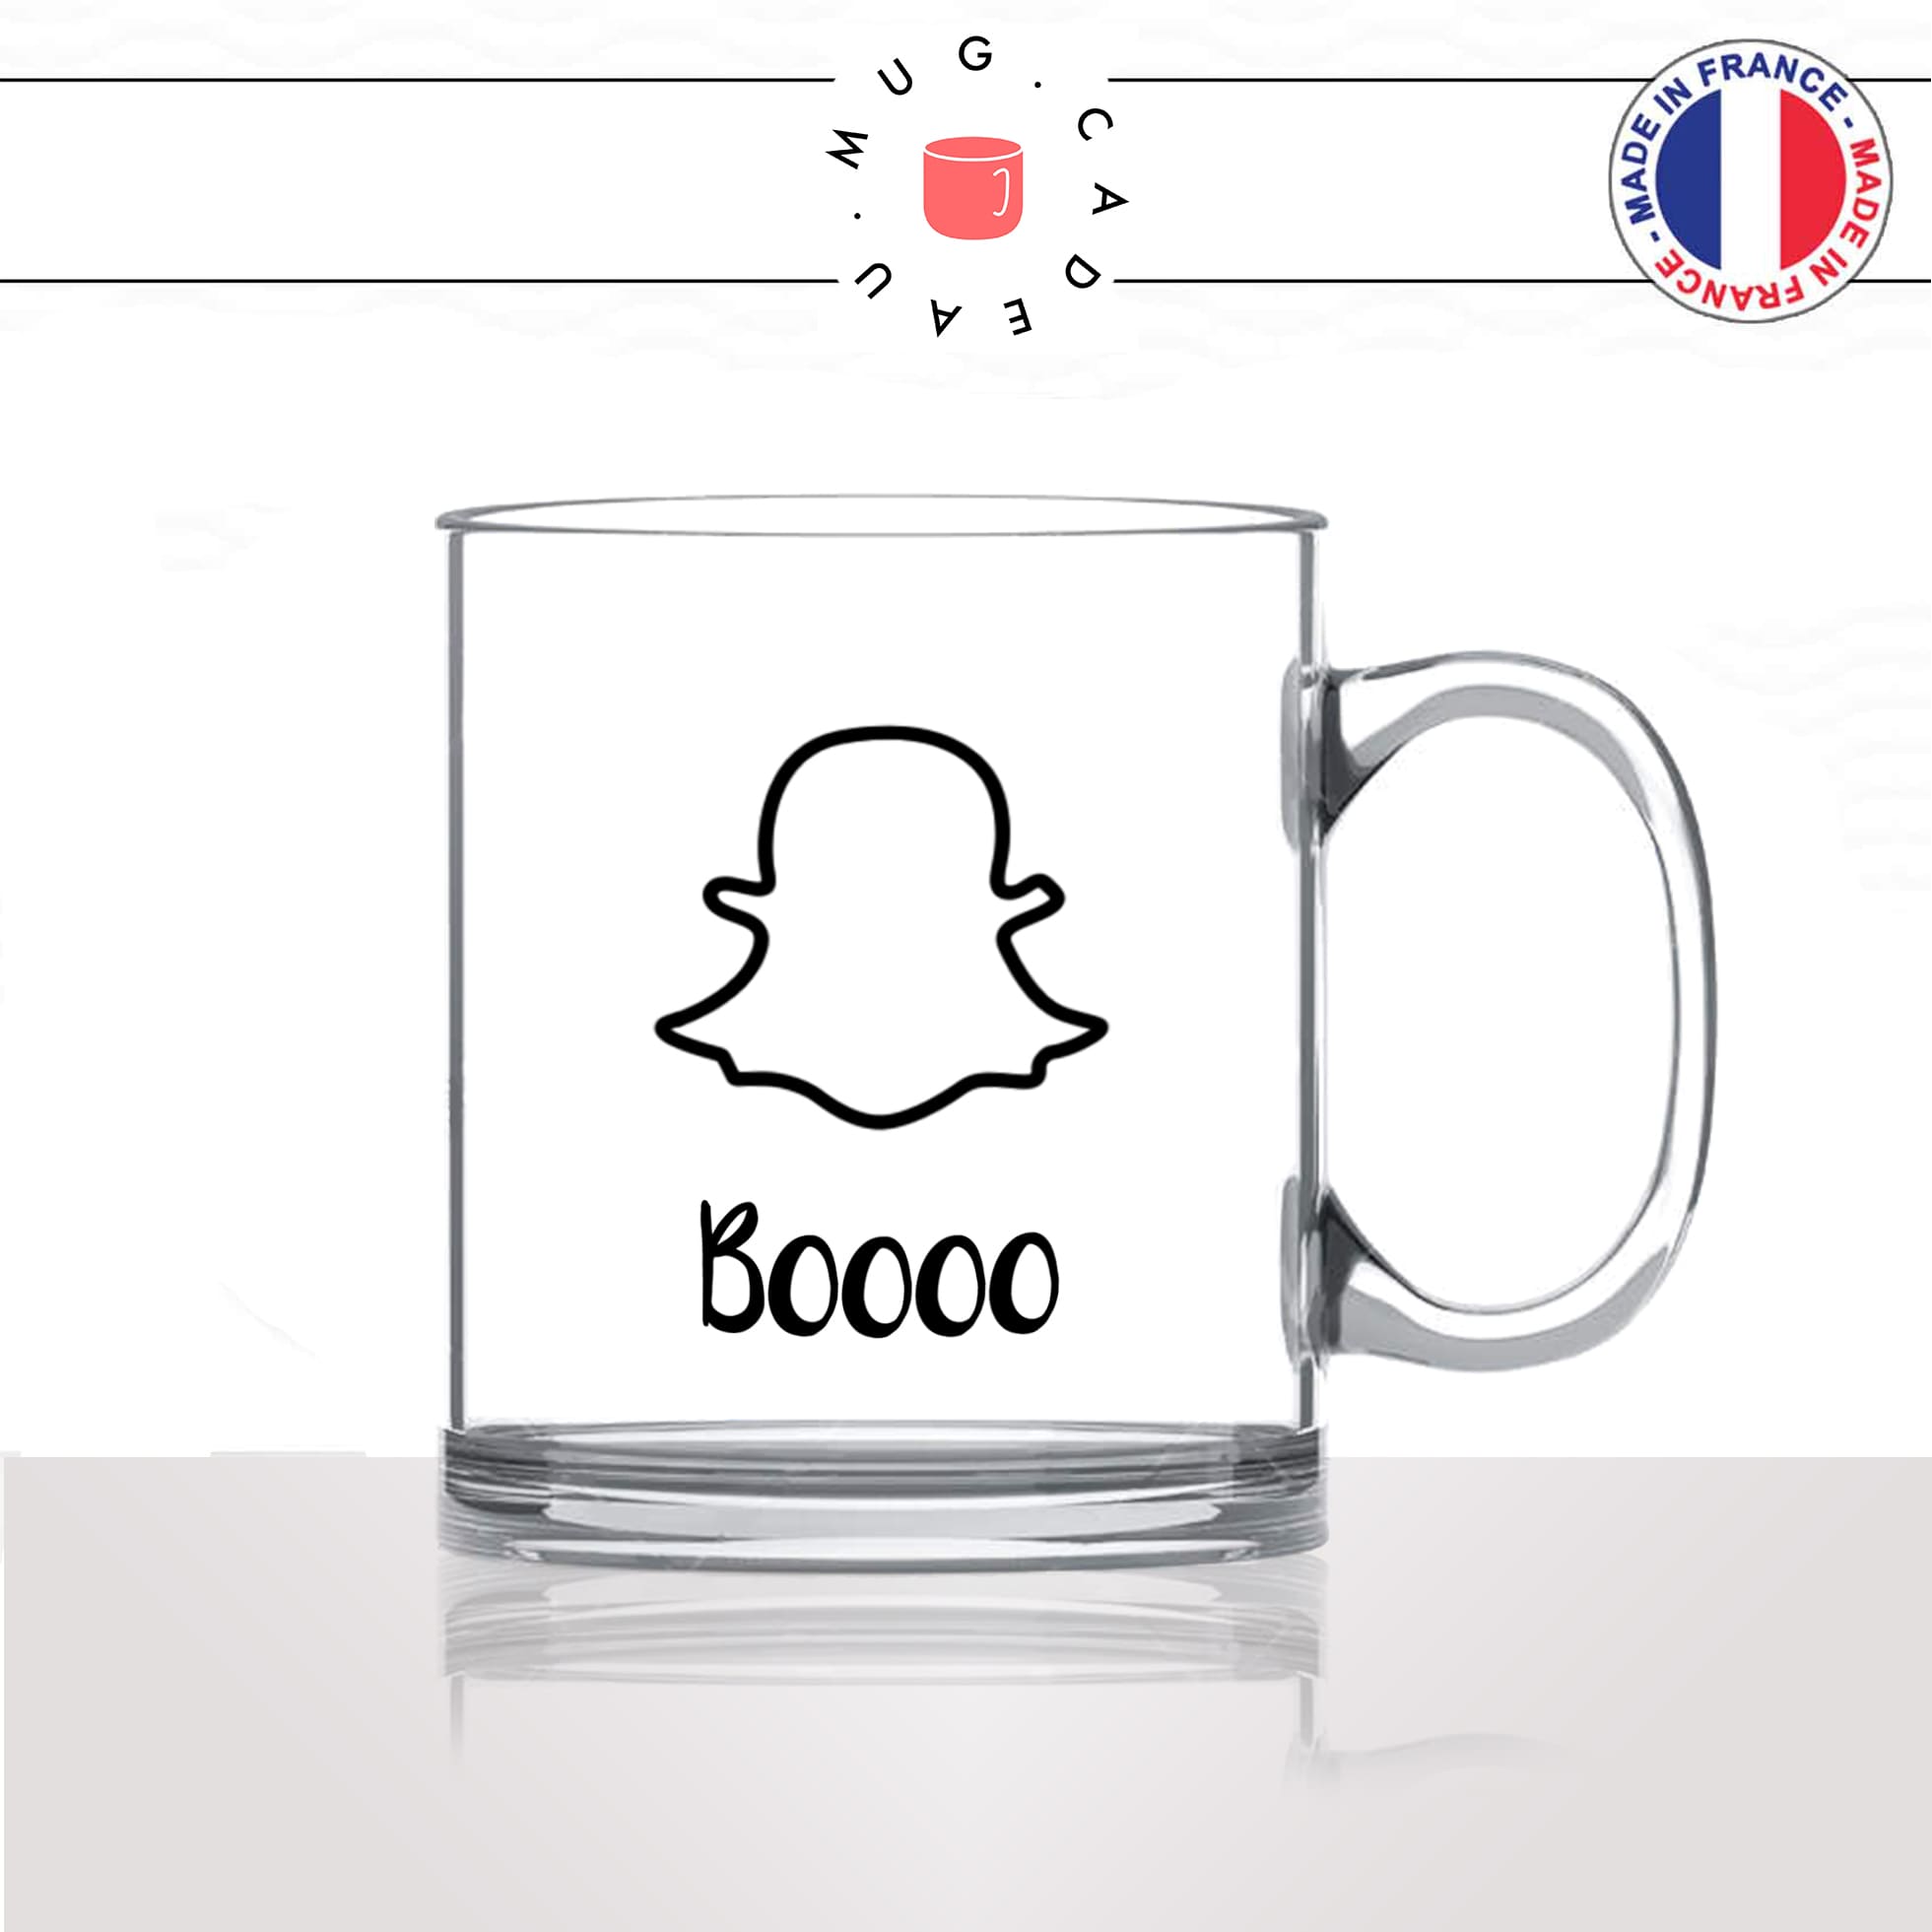 mug-tasse-en-verre-transparent-glass-booooh-fantome-peur-snapchat-reseaux-sociaux-unique-humour-original-idée-cadeau-fun-cool-café-thé2